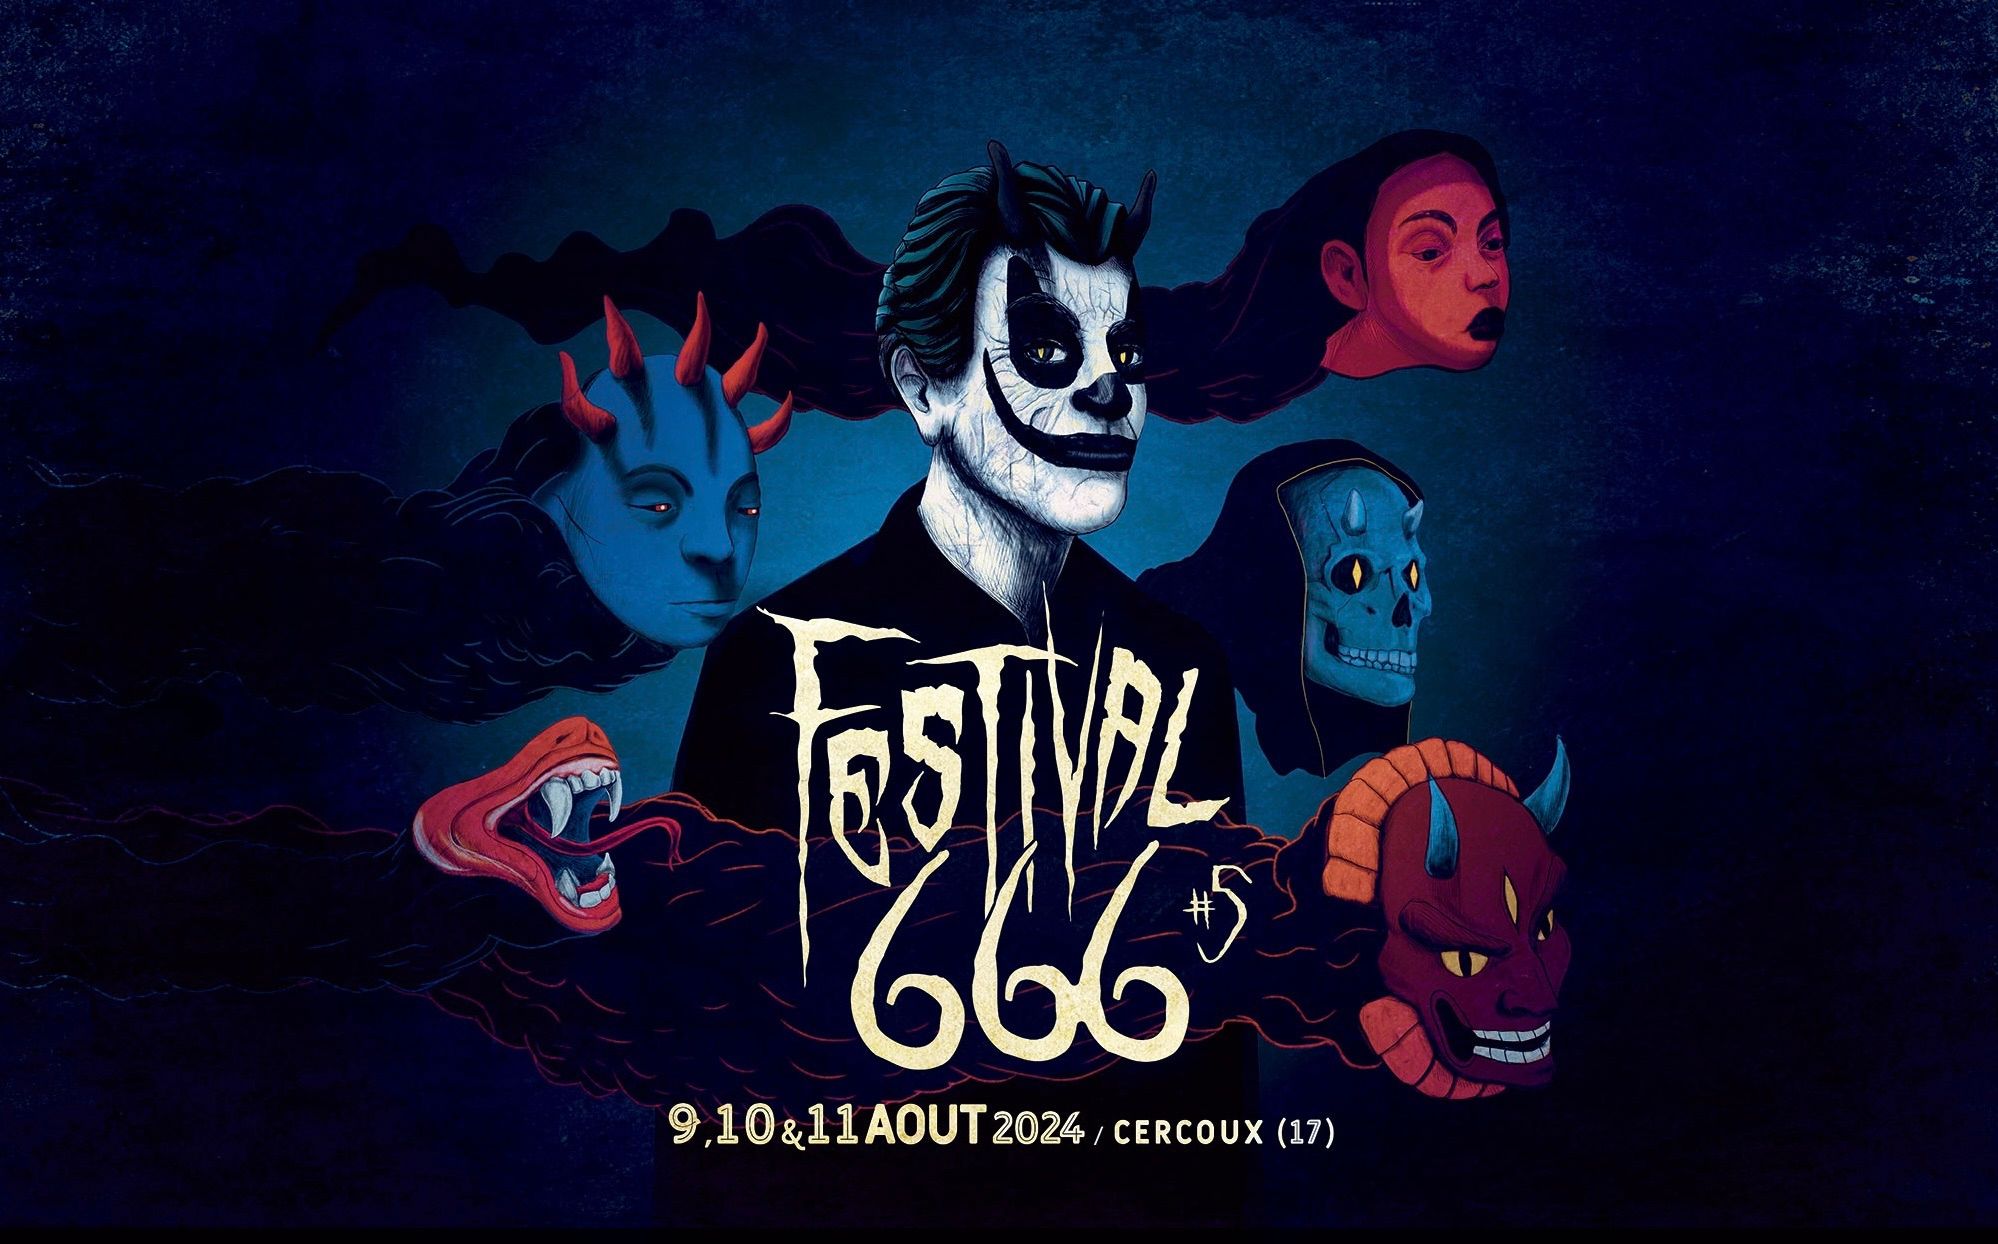 Festival 666 2024 #5